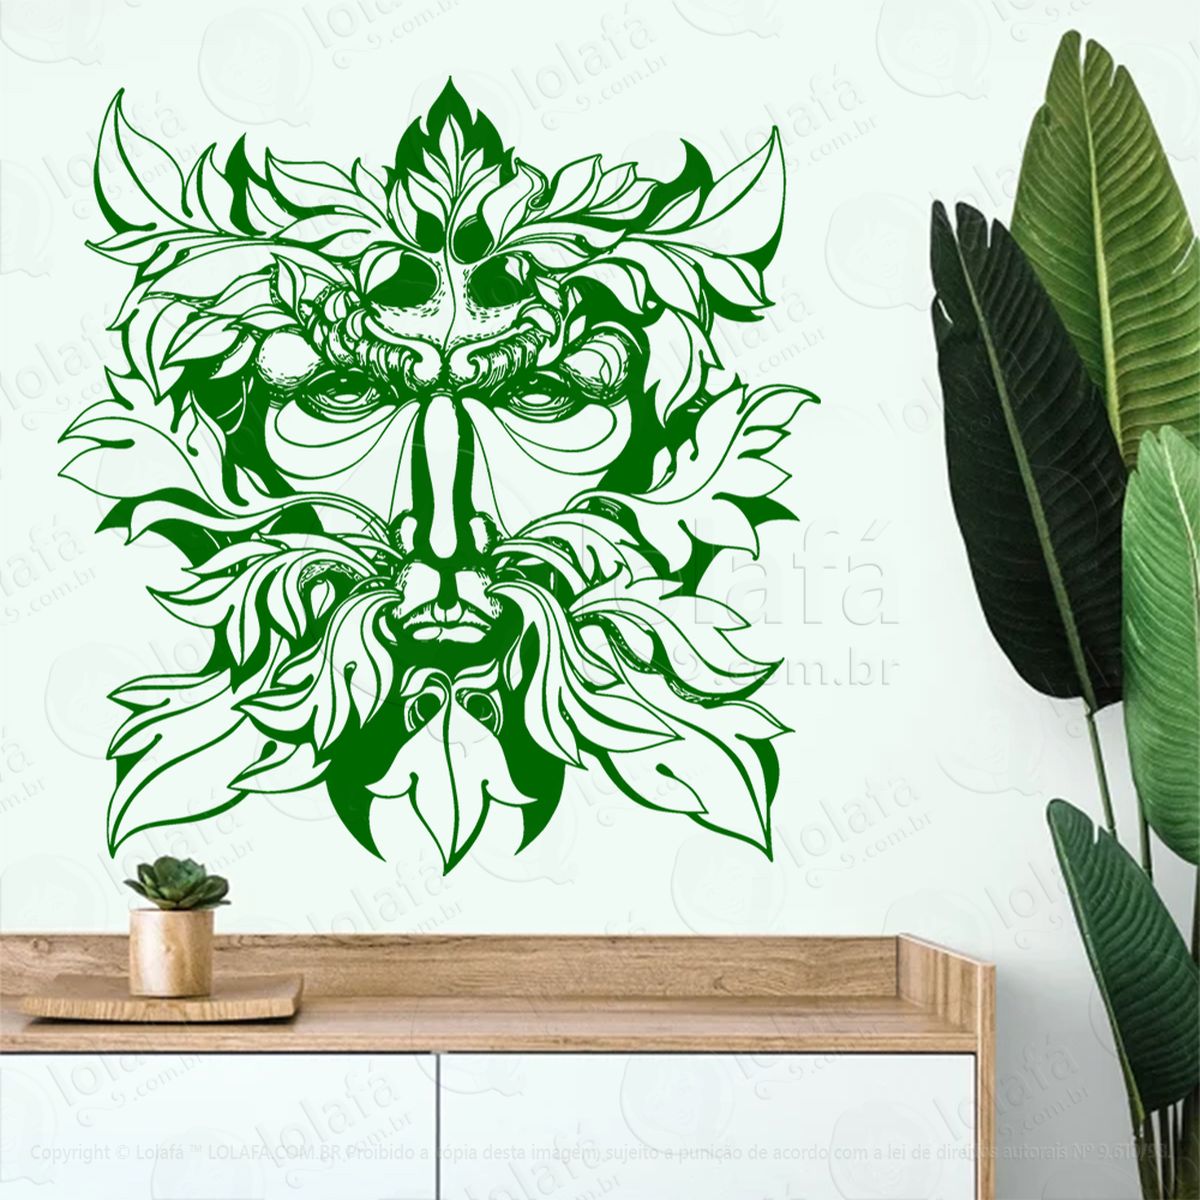 face homem verde green man face adesivo de parede decorativo para casa, sala, quarto, vidro e altar ocultista - mod:178